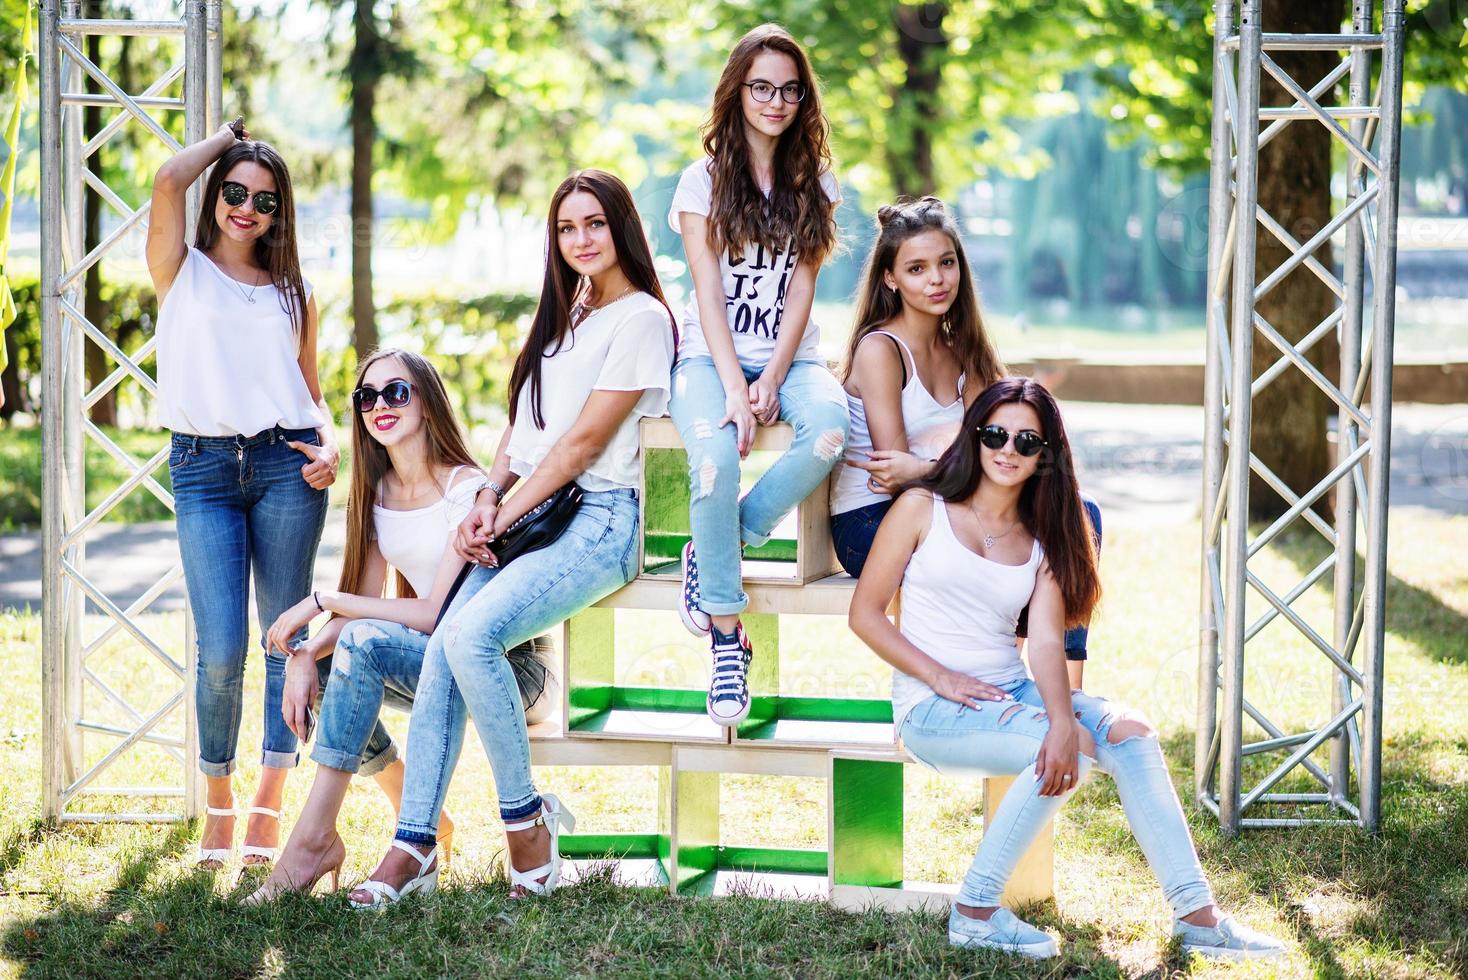 seis meninas modelo maravilhosas posando em caixas de madeira no parque em um dia ensolarado. foto